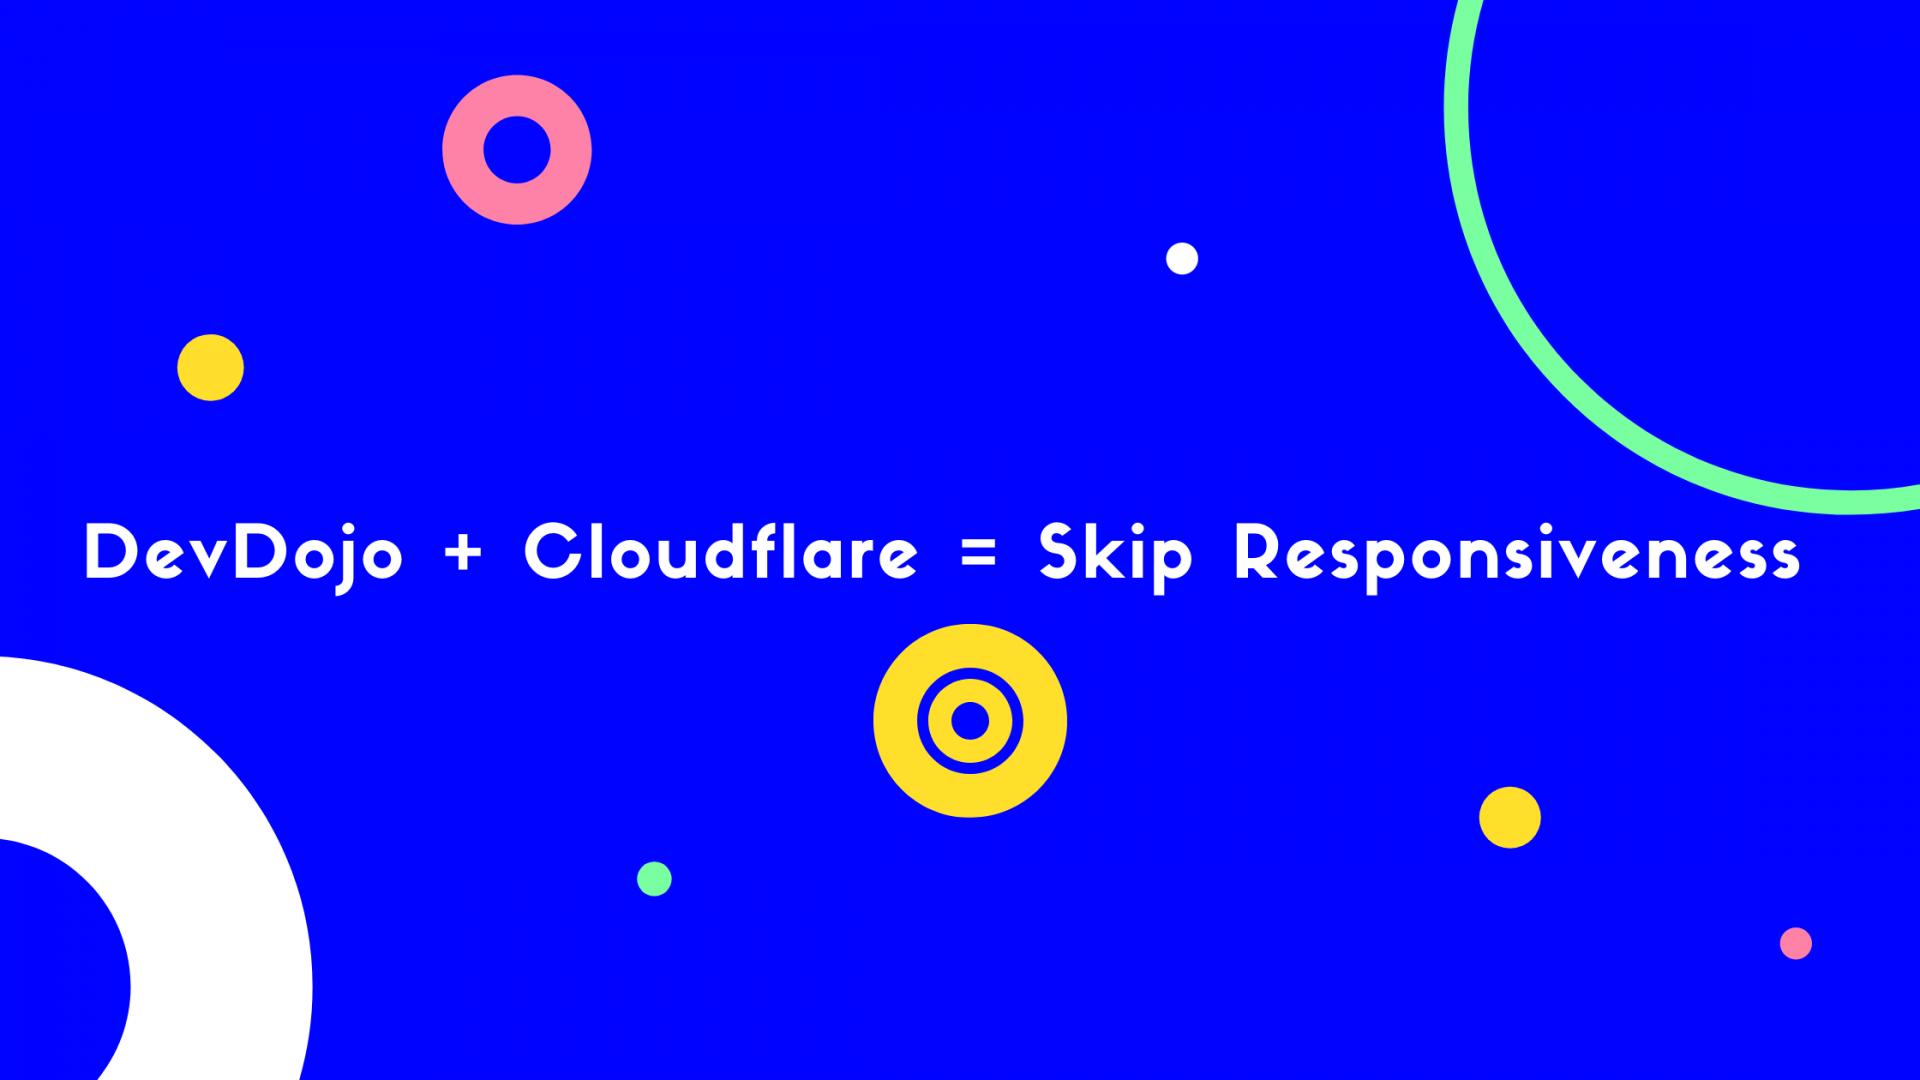 DevDojo + Cloudflare = Skip Responsiveness